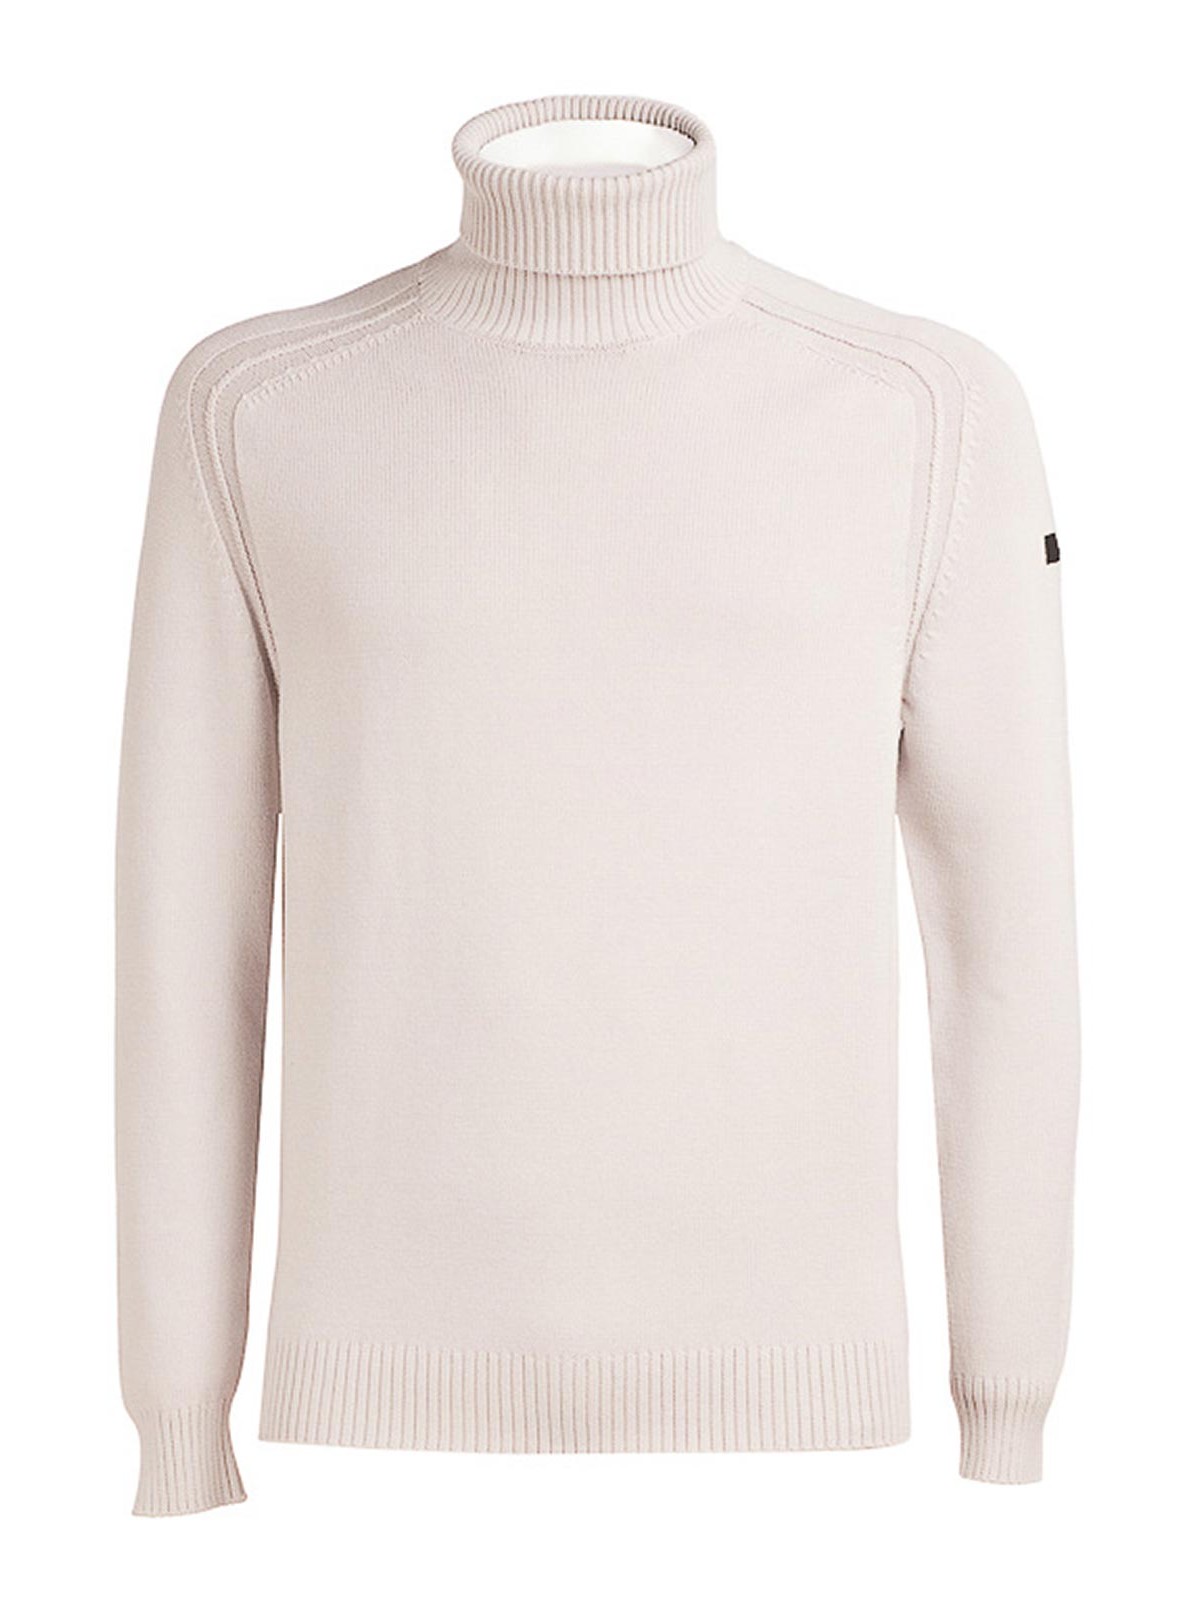 Rrd Roberto Ricci Designs Turtleneck Sweater In White